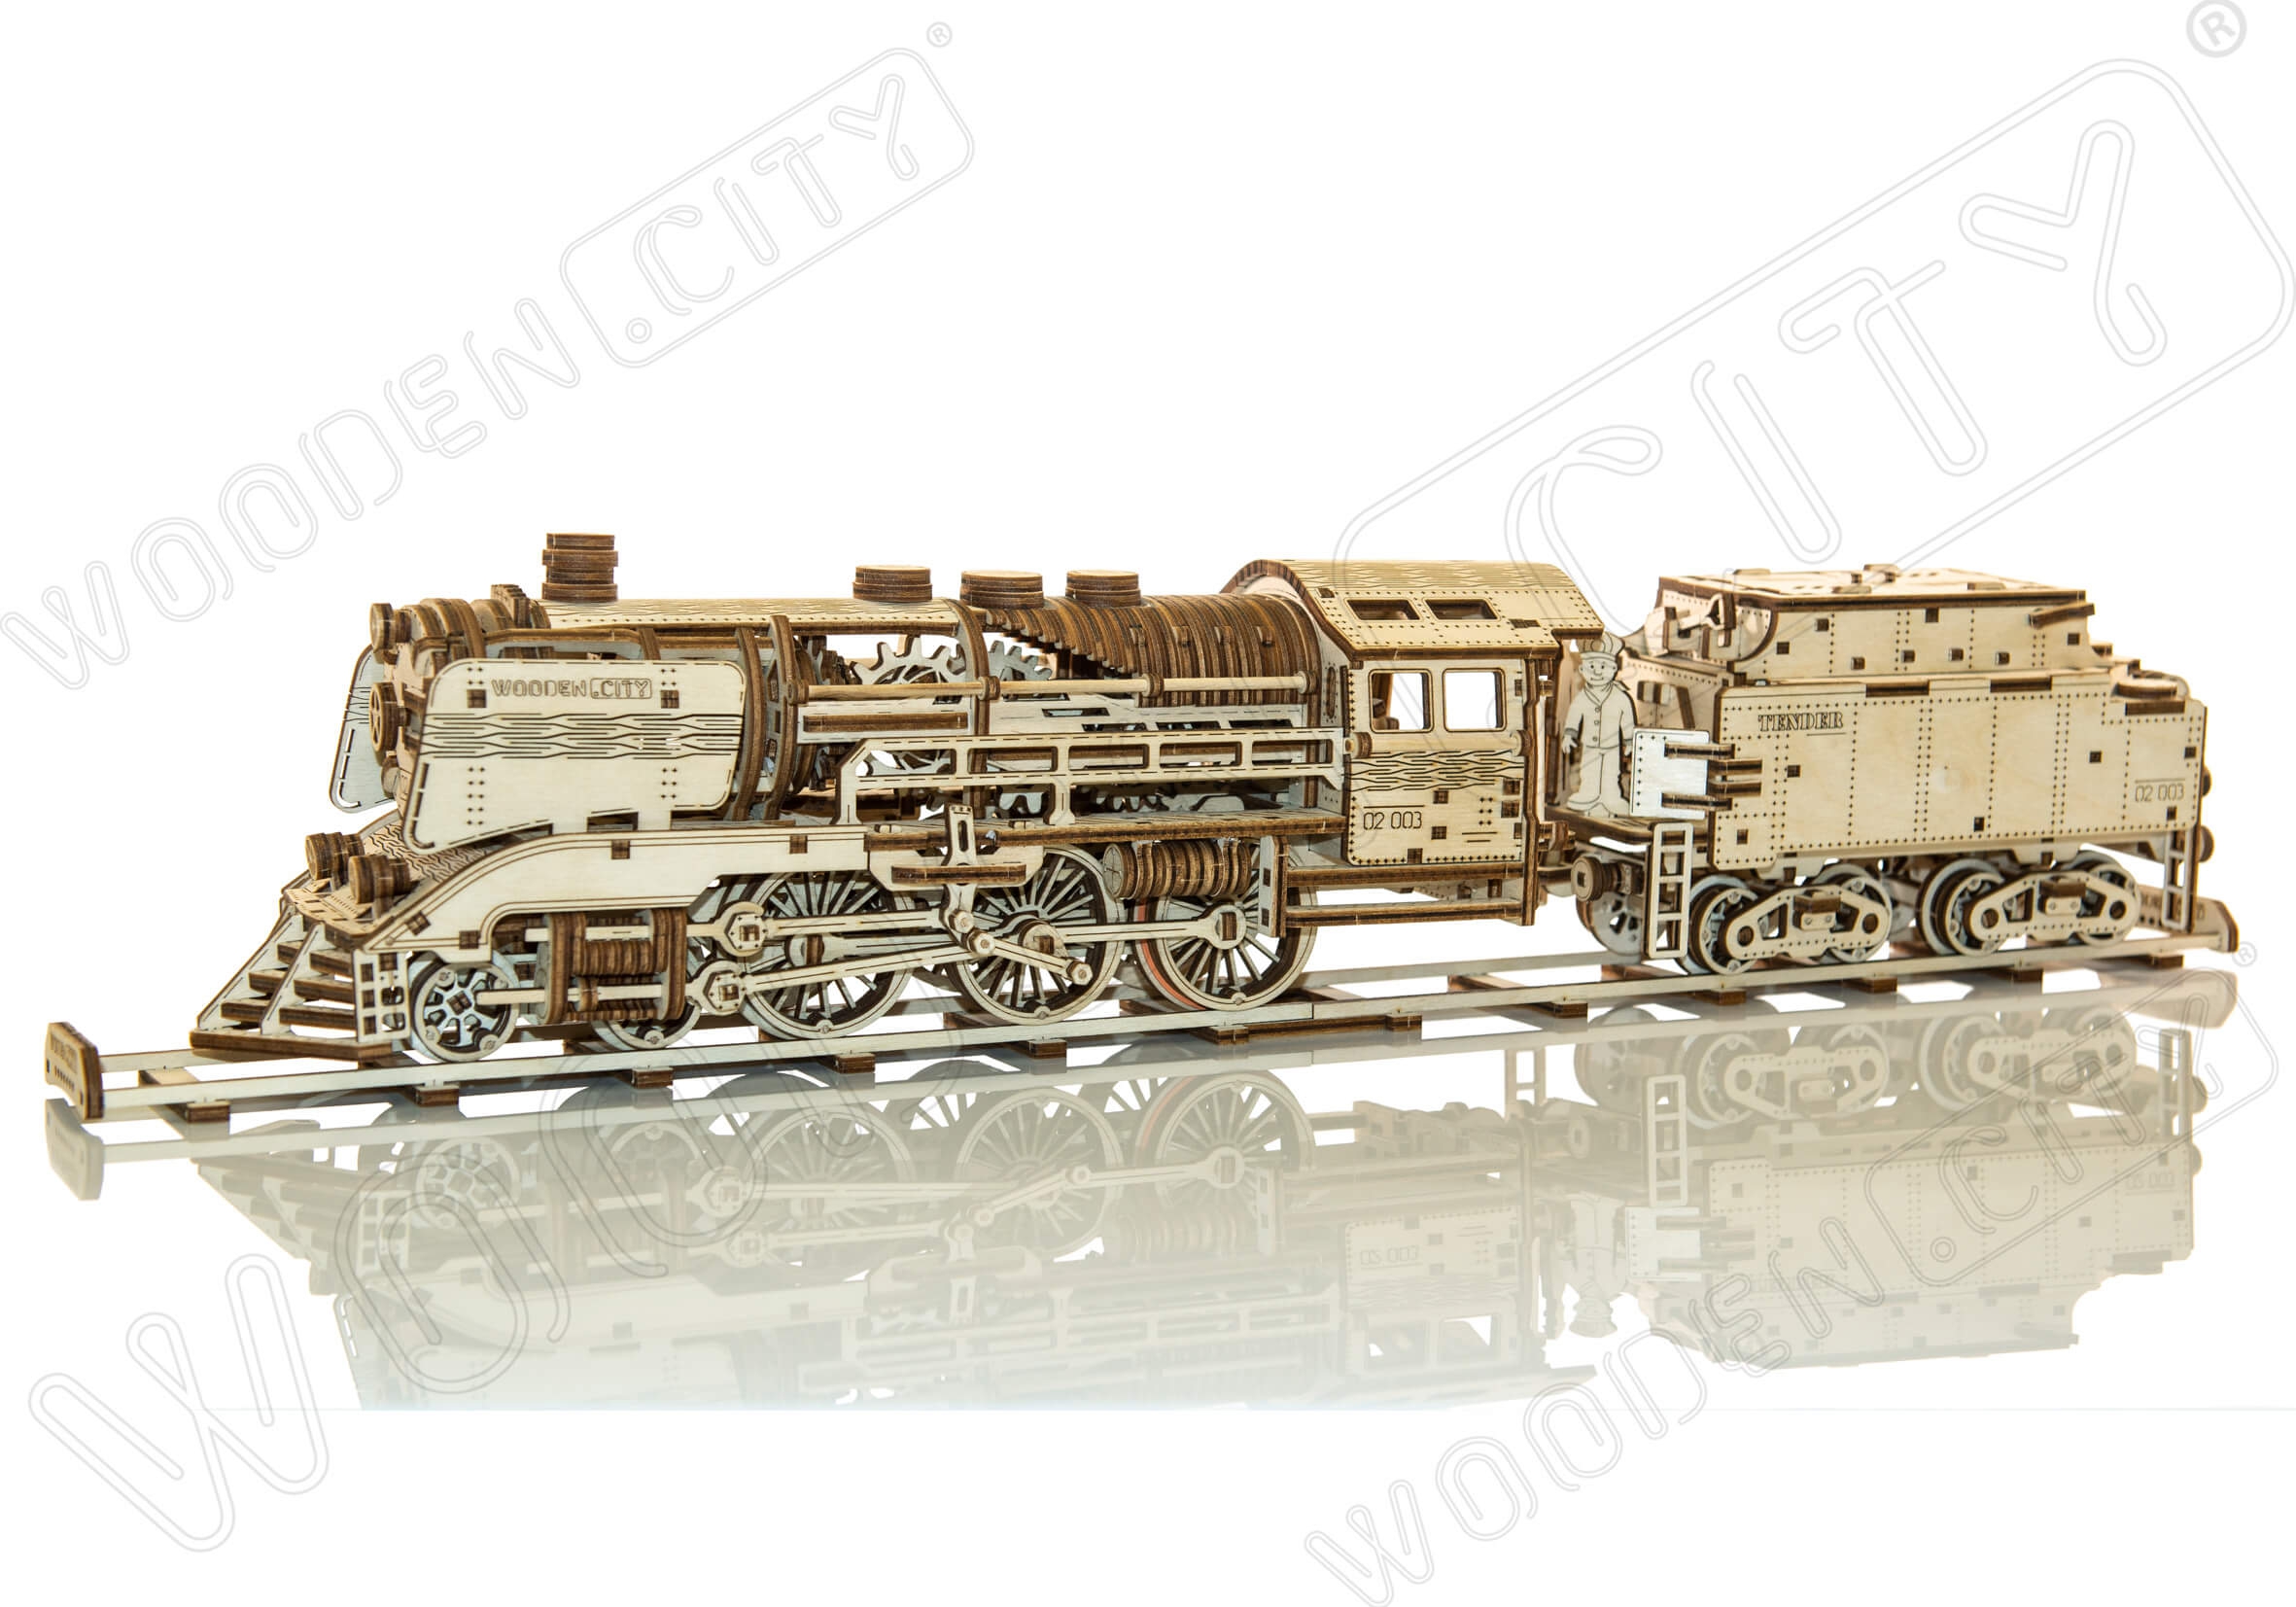 Wooden city 3D puzzel locomotief en kolenwagen